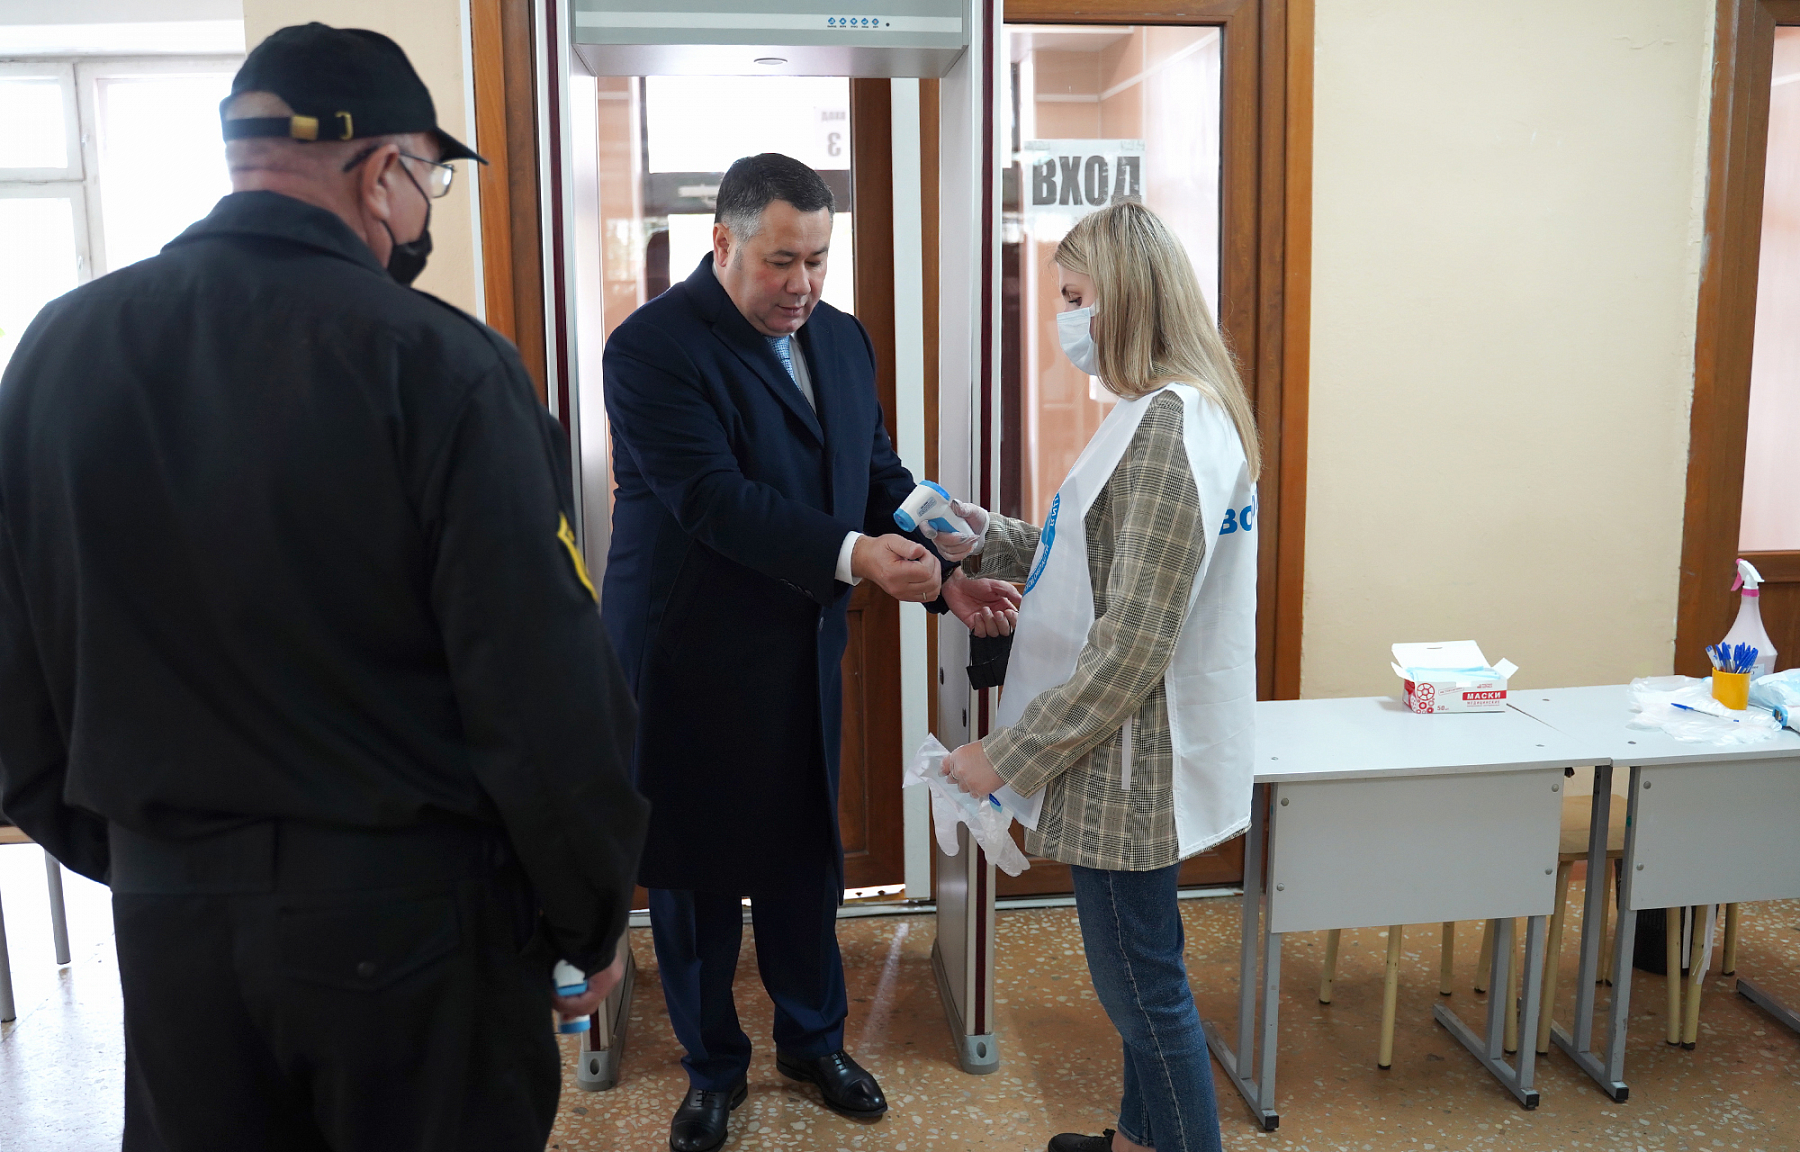 Игорь Руденя проголосовал на избирательном участке в школе №14 Твери